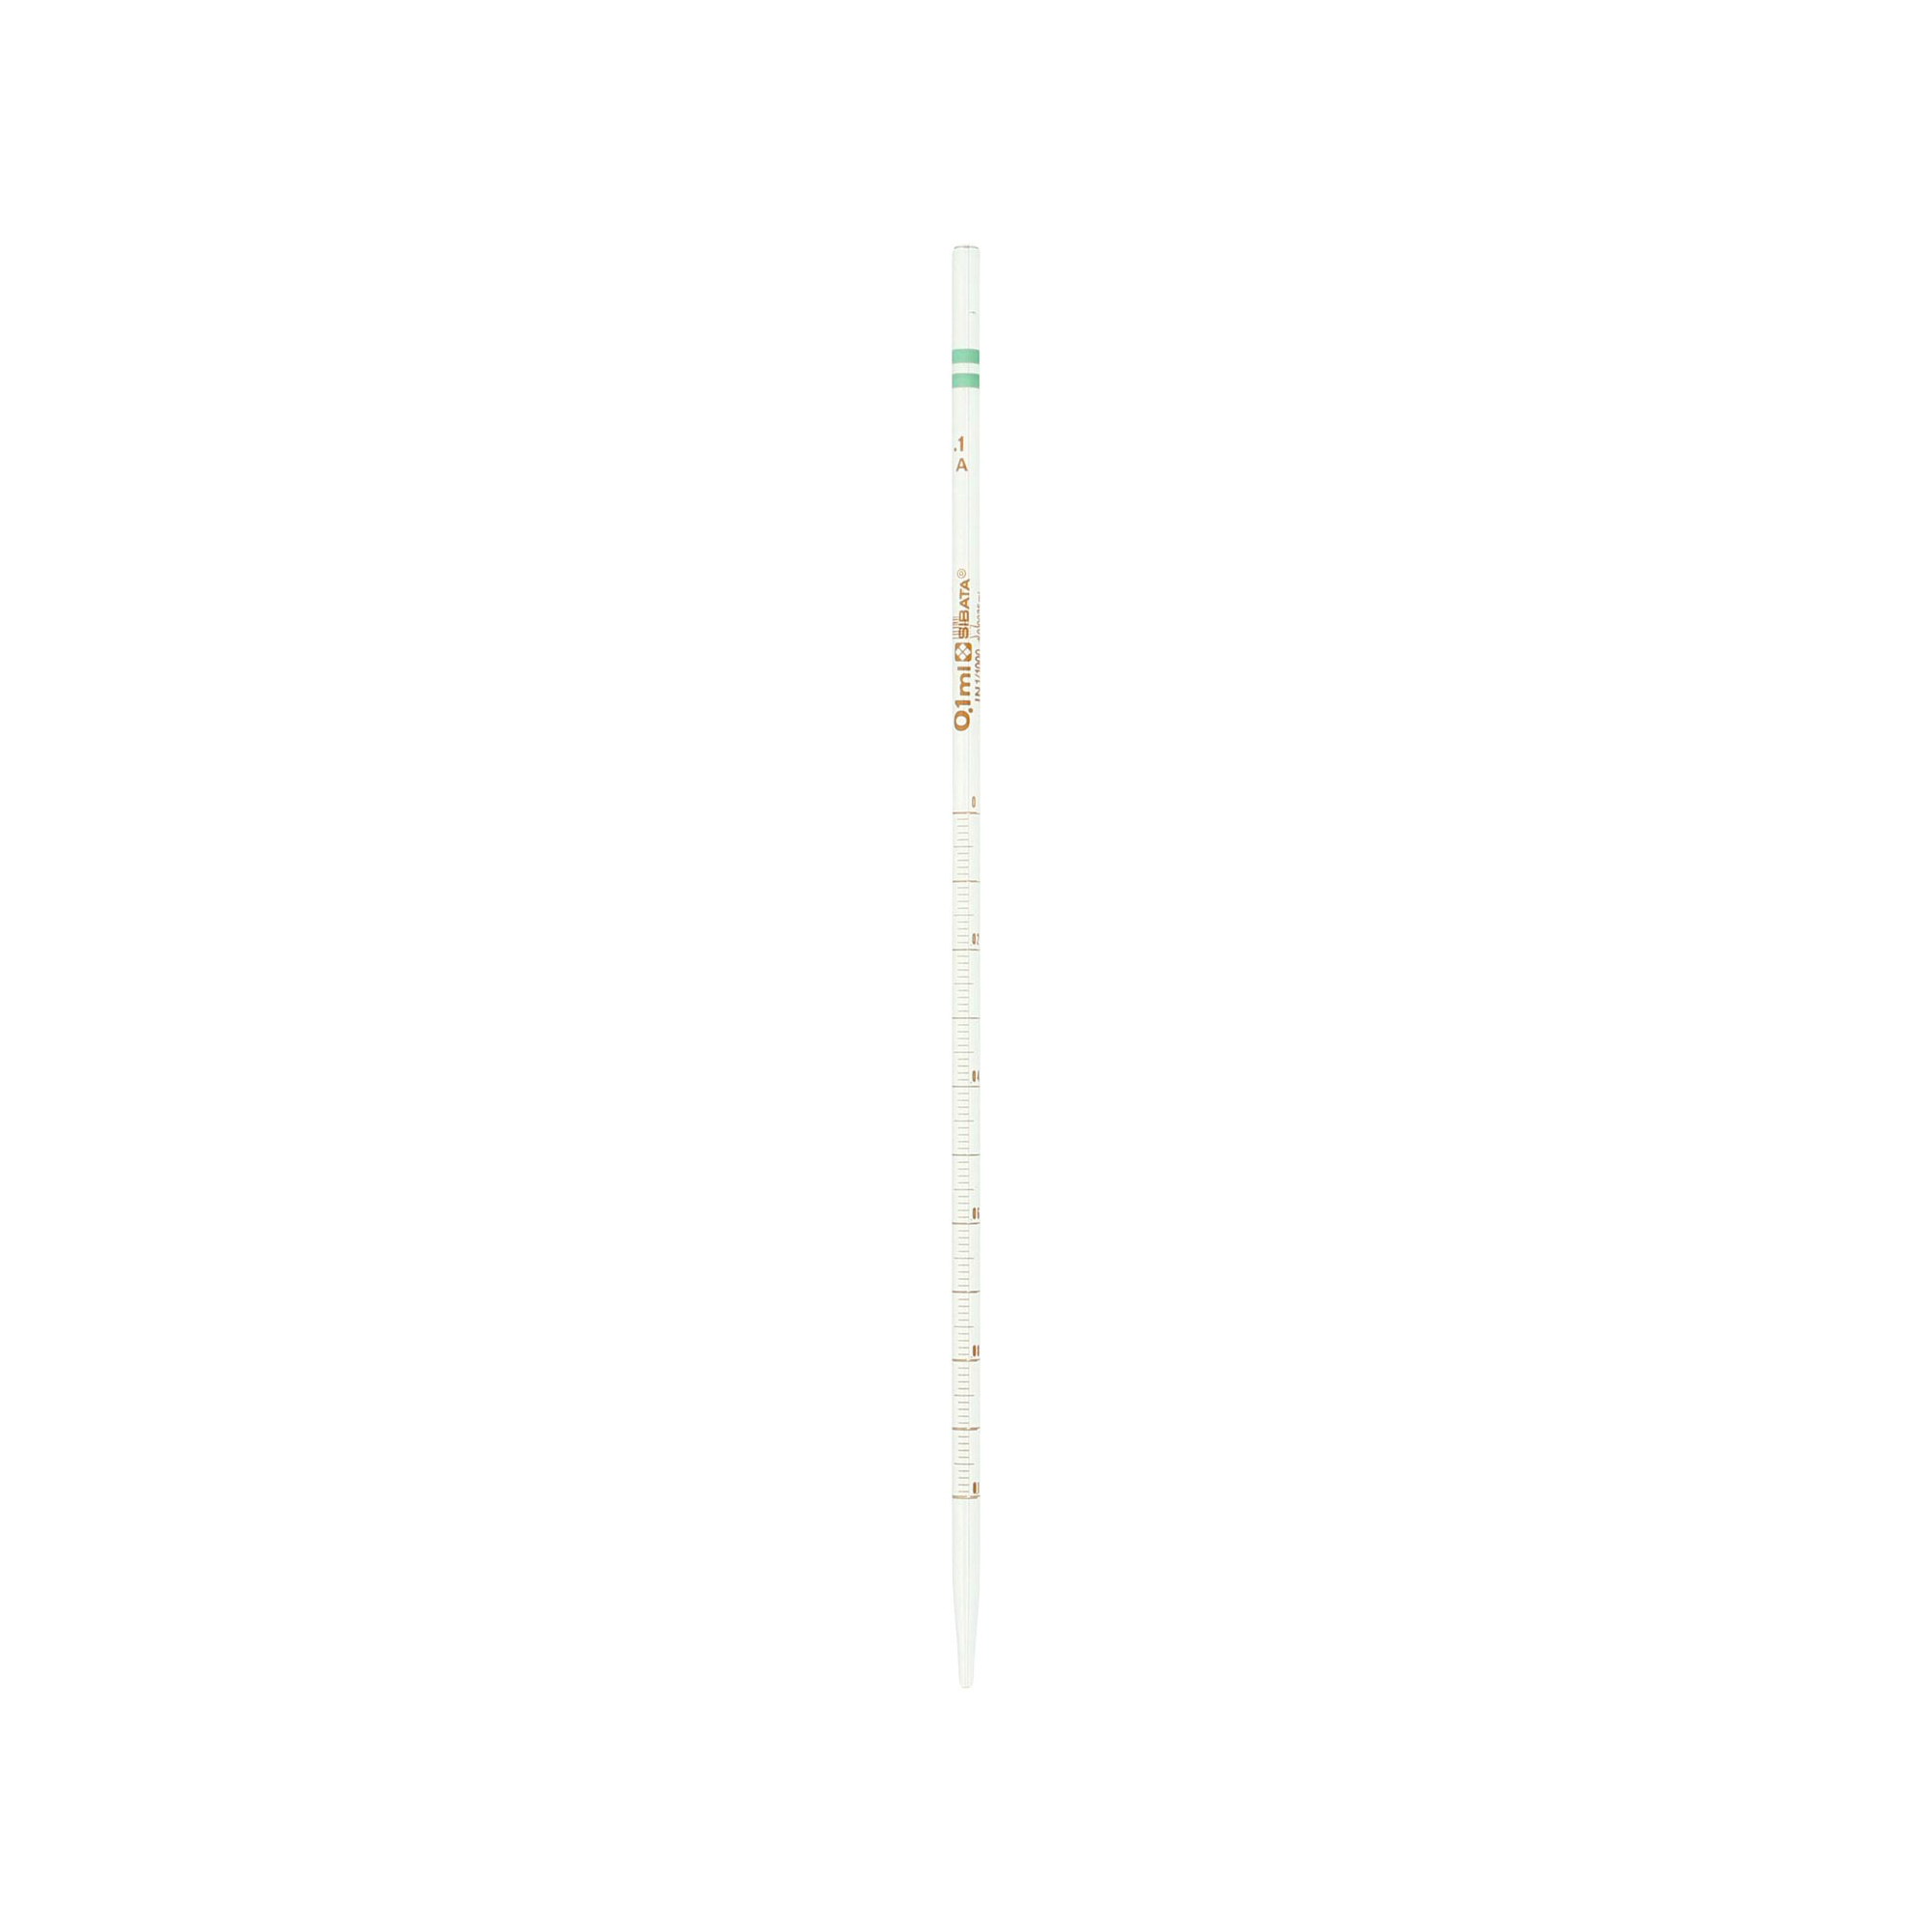 020010-01A メスピペット 中間目盛 カラーコード付 スーパーグレード 0.1mL(10本) 柴田科学(SIBATA)